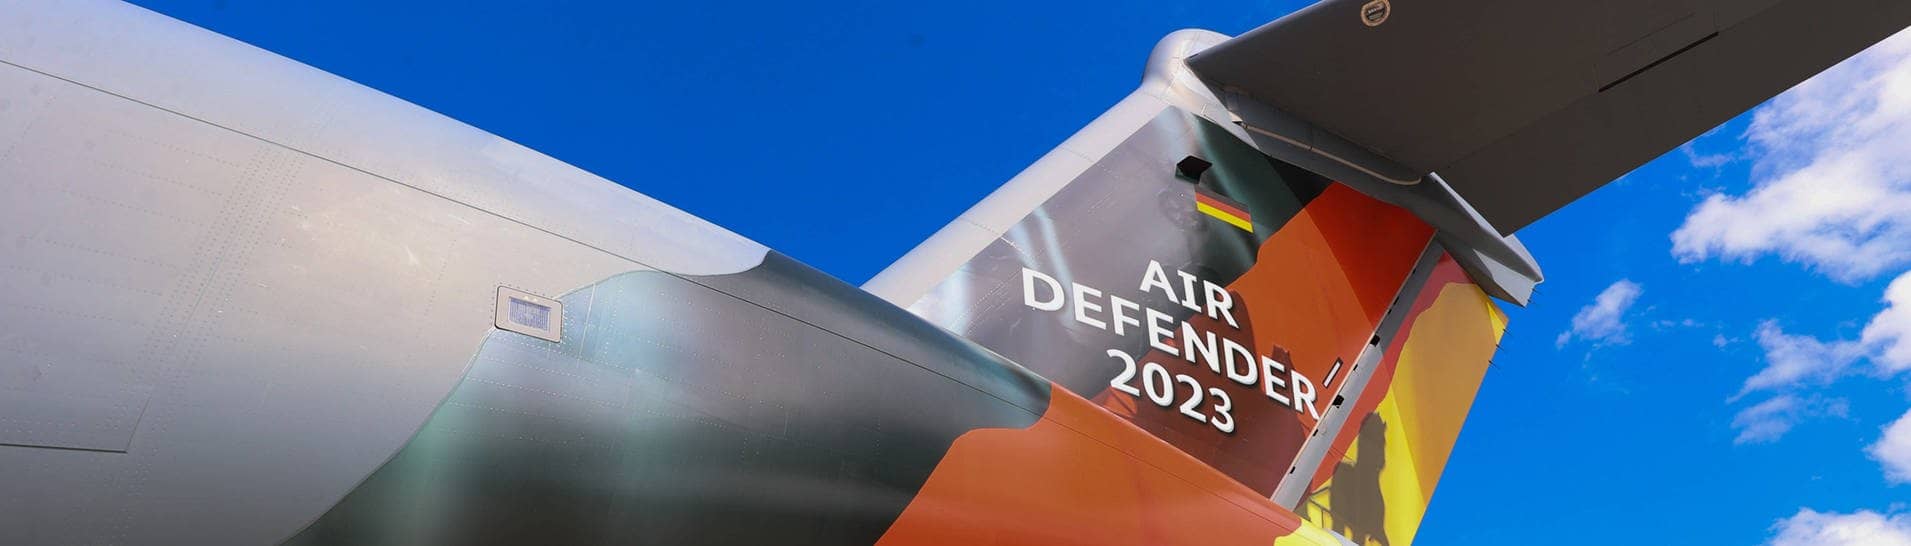 „Air Defender 23“ und eine Deutschlandflagge sind auf das Heckleitwerk eines Militärflugzeugs gedruckt